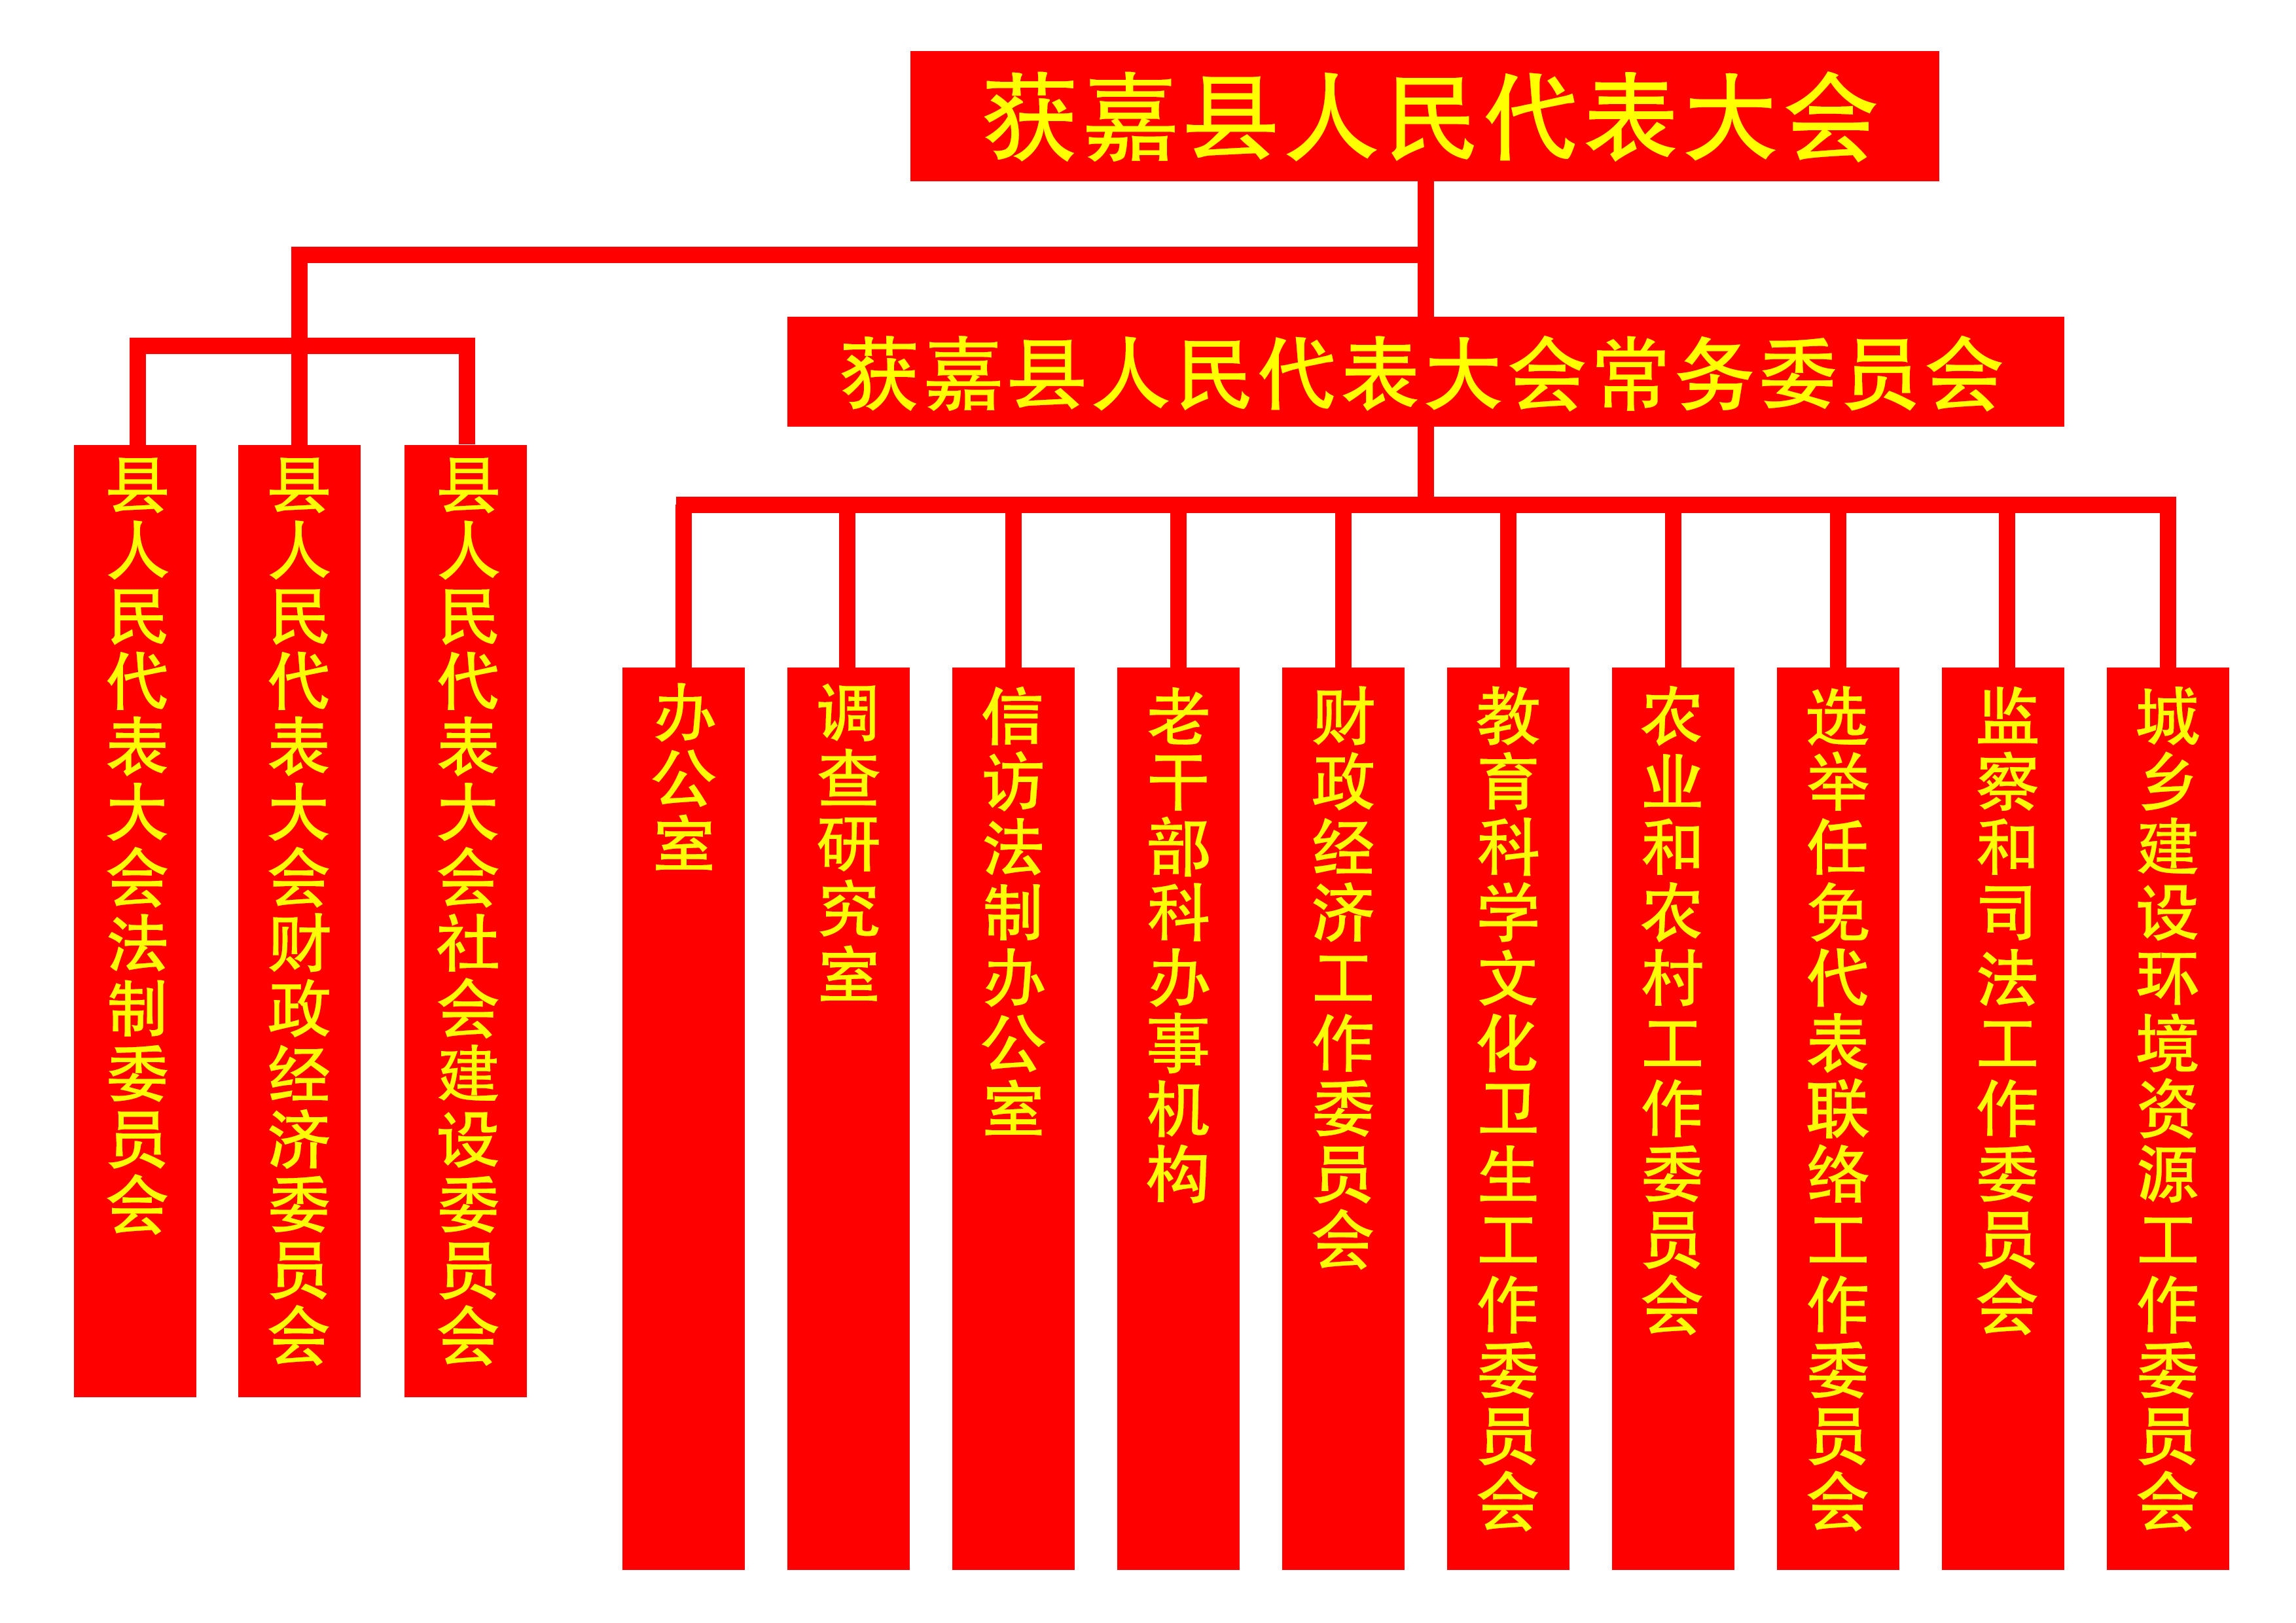 县人民政府组织架构图图片